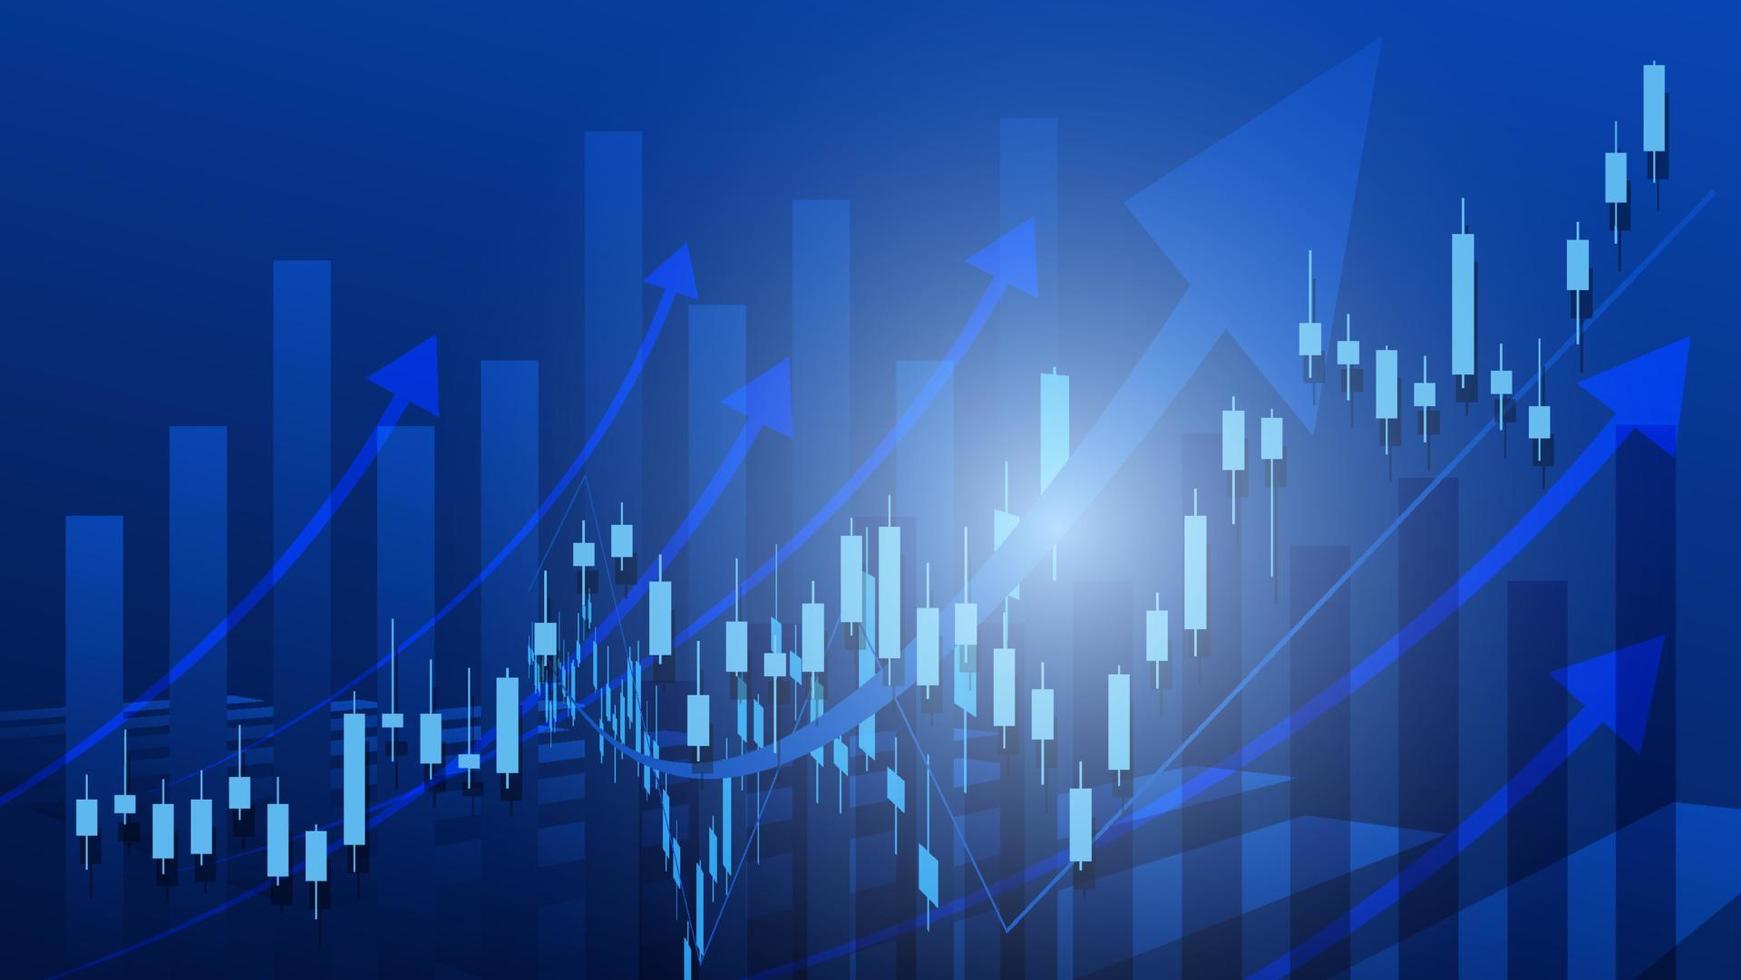 conceito de situação de economia. estatísticas de negócios financeiros com gráfico de barras e gráfico de velas mostram o preço do mercado de ações e câmbio em fundo azul vetor